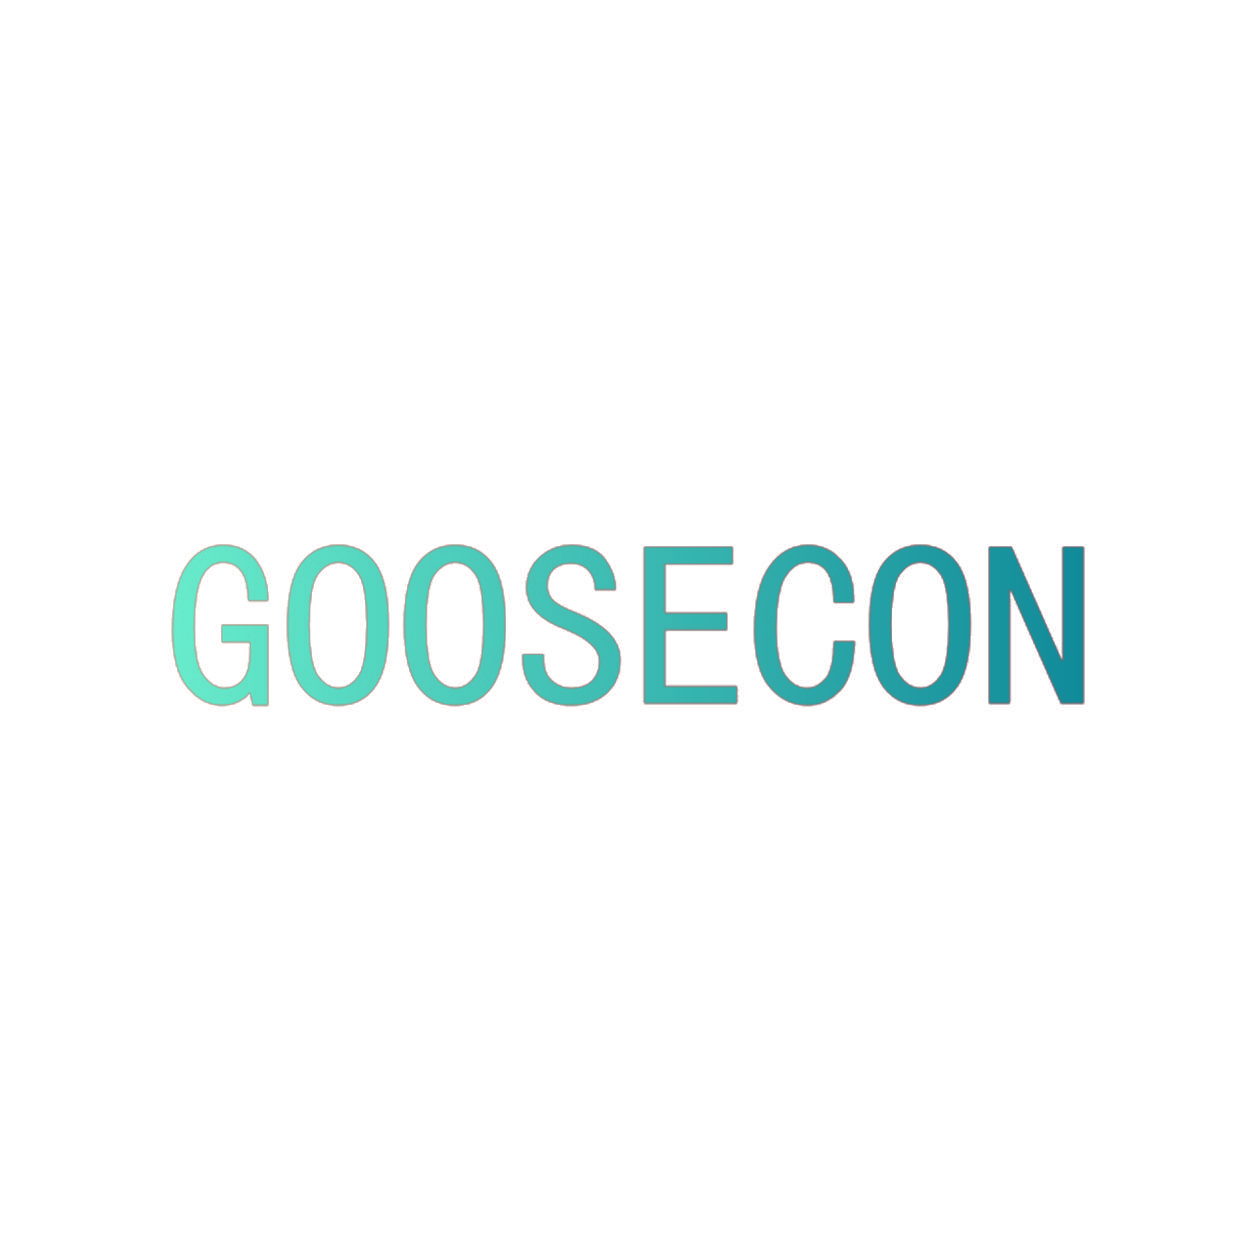 GOOSECON